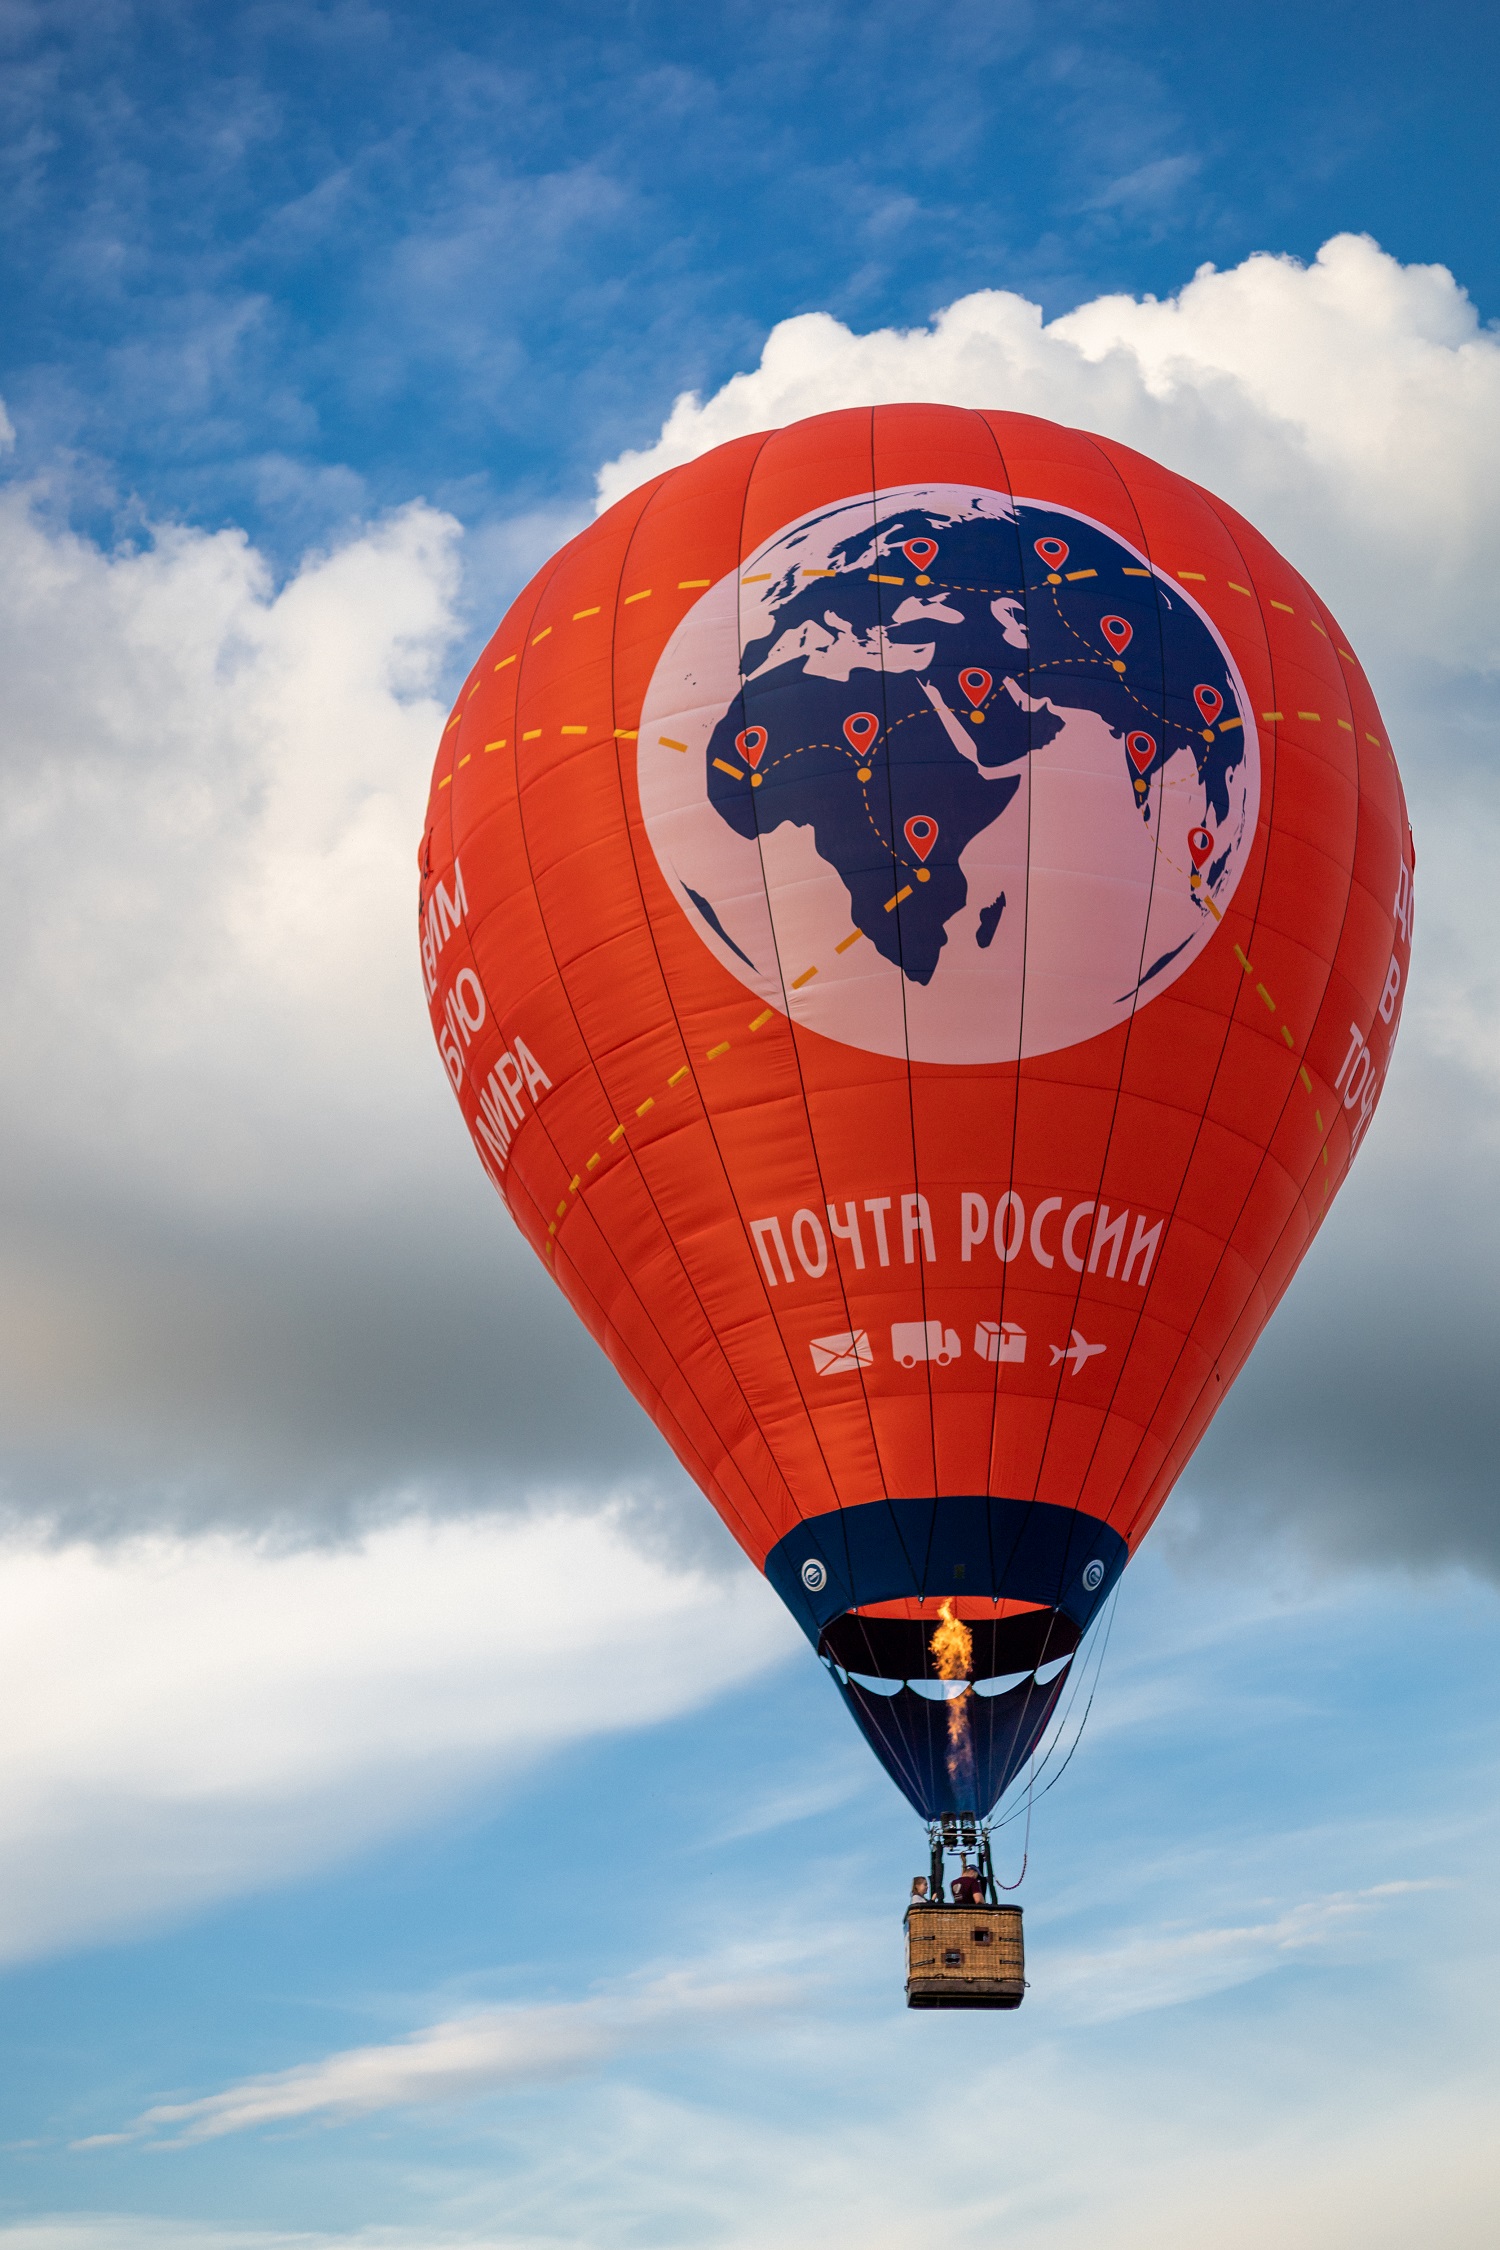 Воздушный шар Почты России стал победителем на 28-й Международной встрече воздухоплавателей.